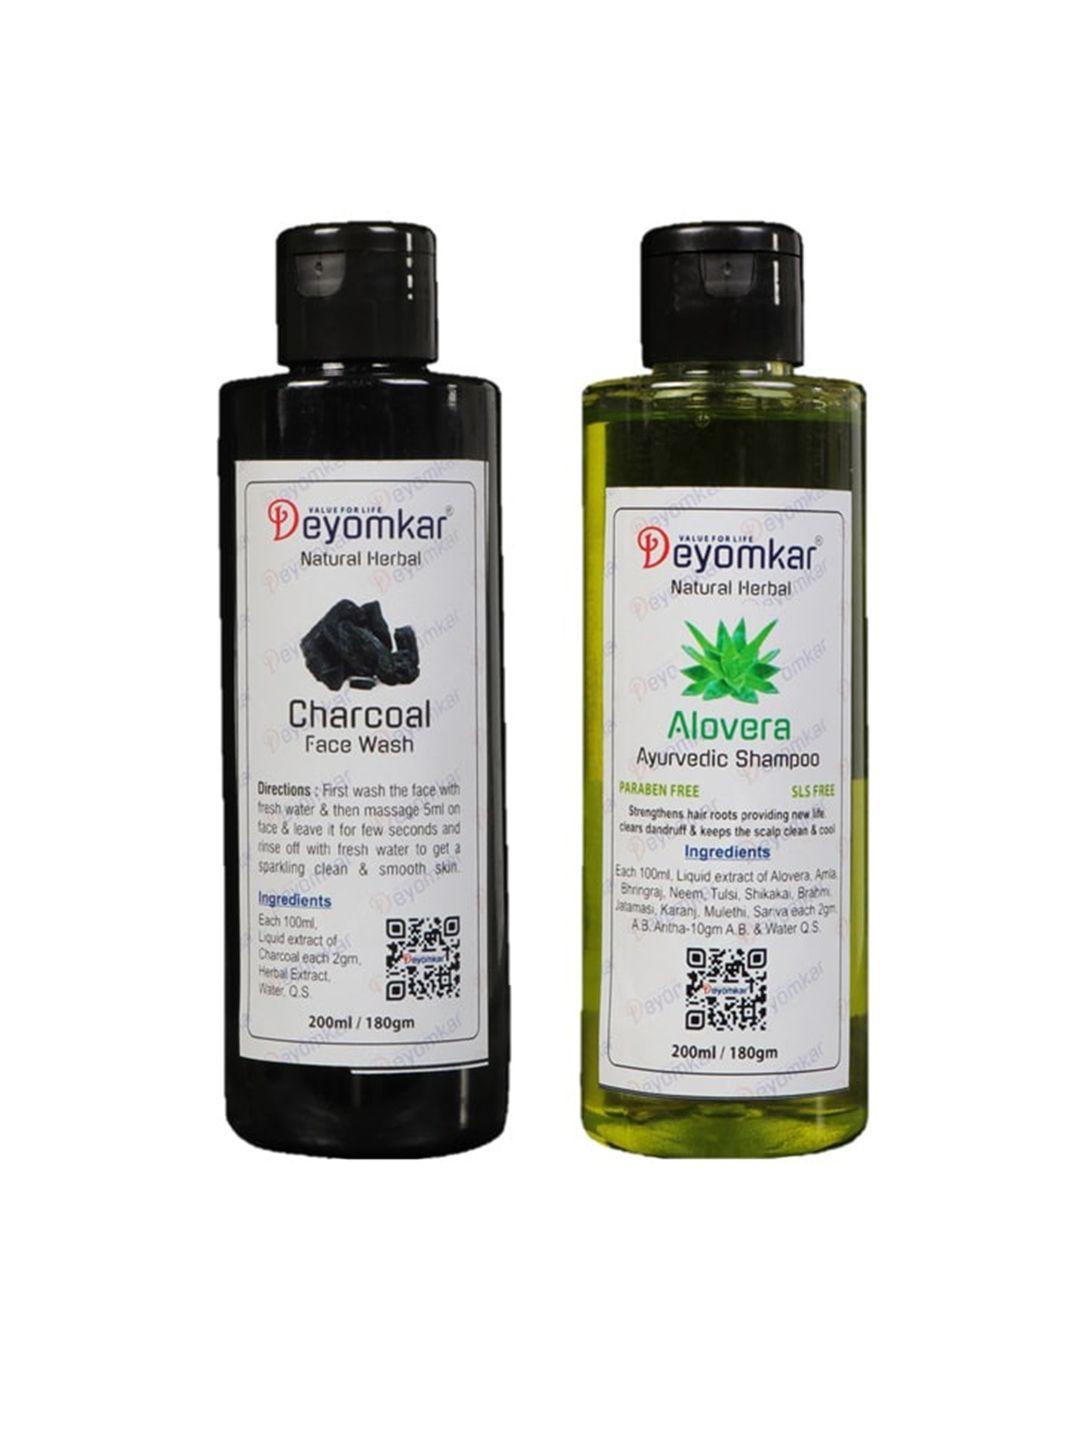 deyomkar natural herbal alovera shampoo and charcol face wash combo 200ml each